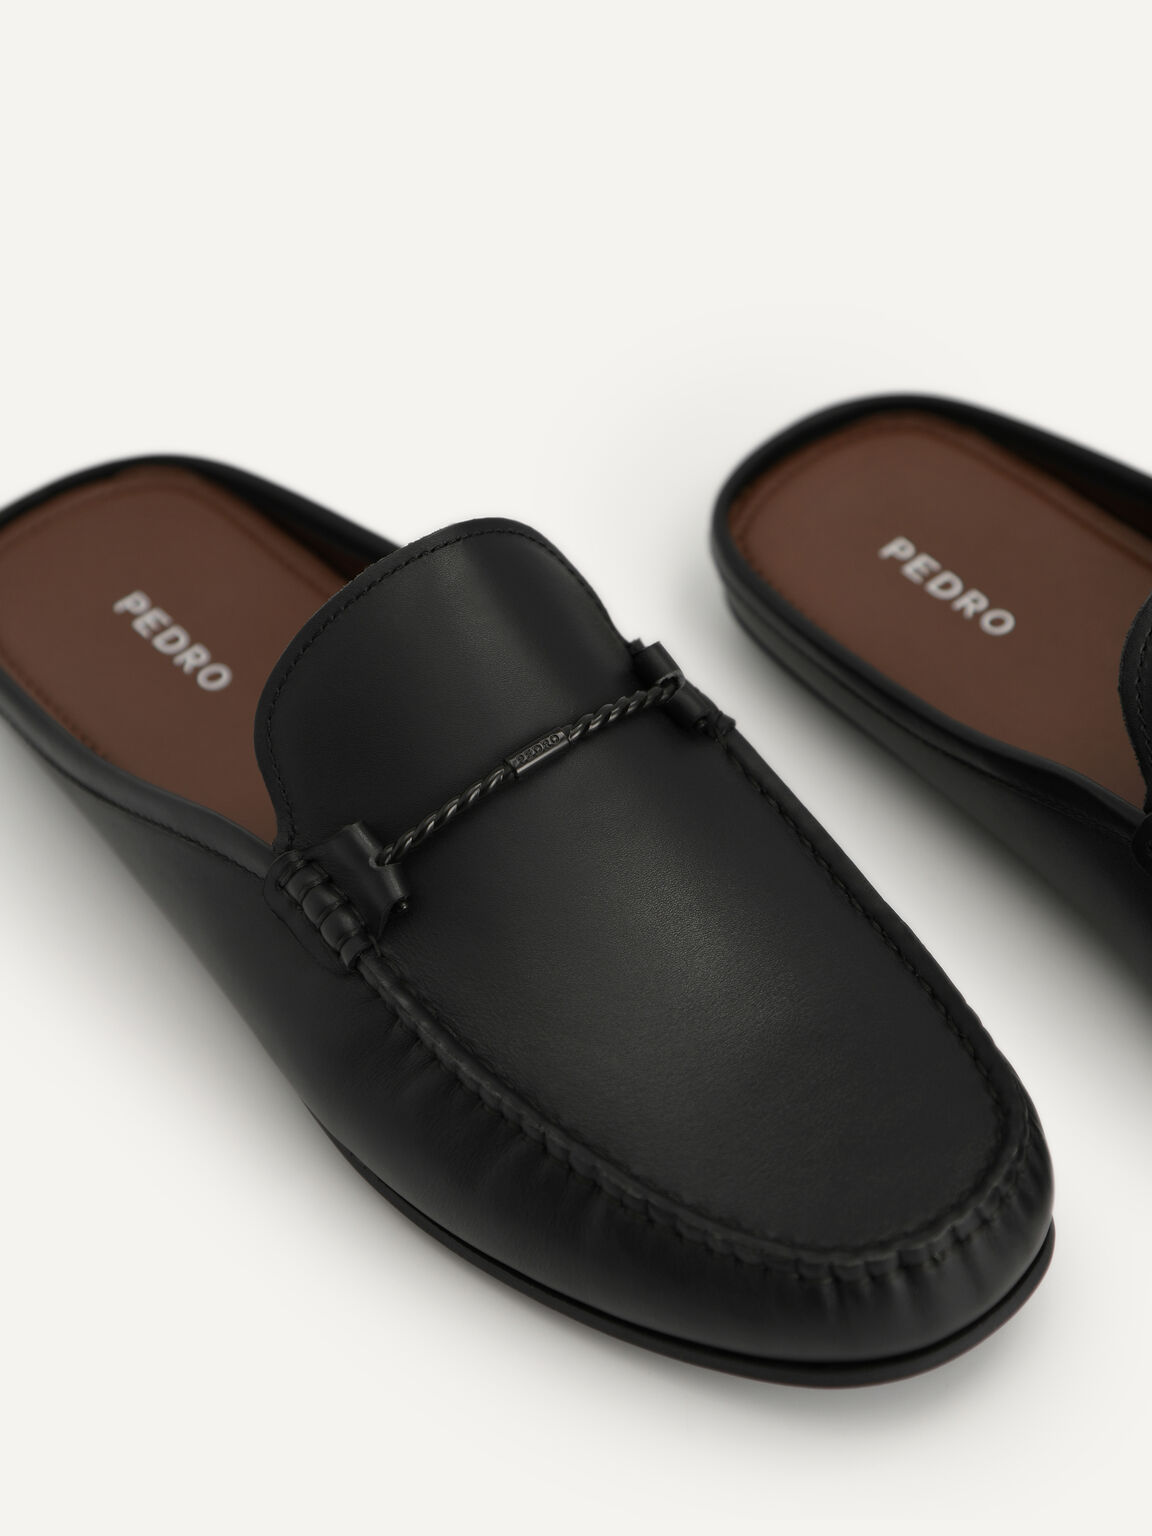 Leather Slip-On Driving Shoe, Black, hi-res